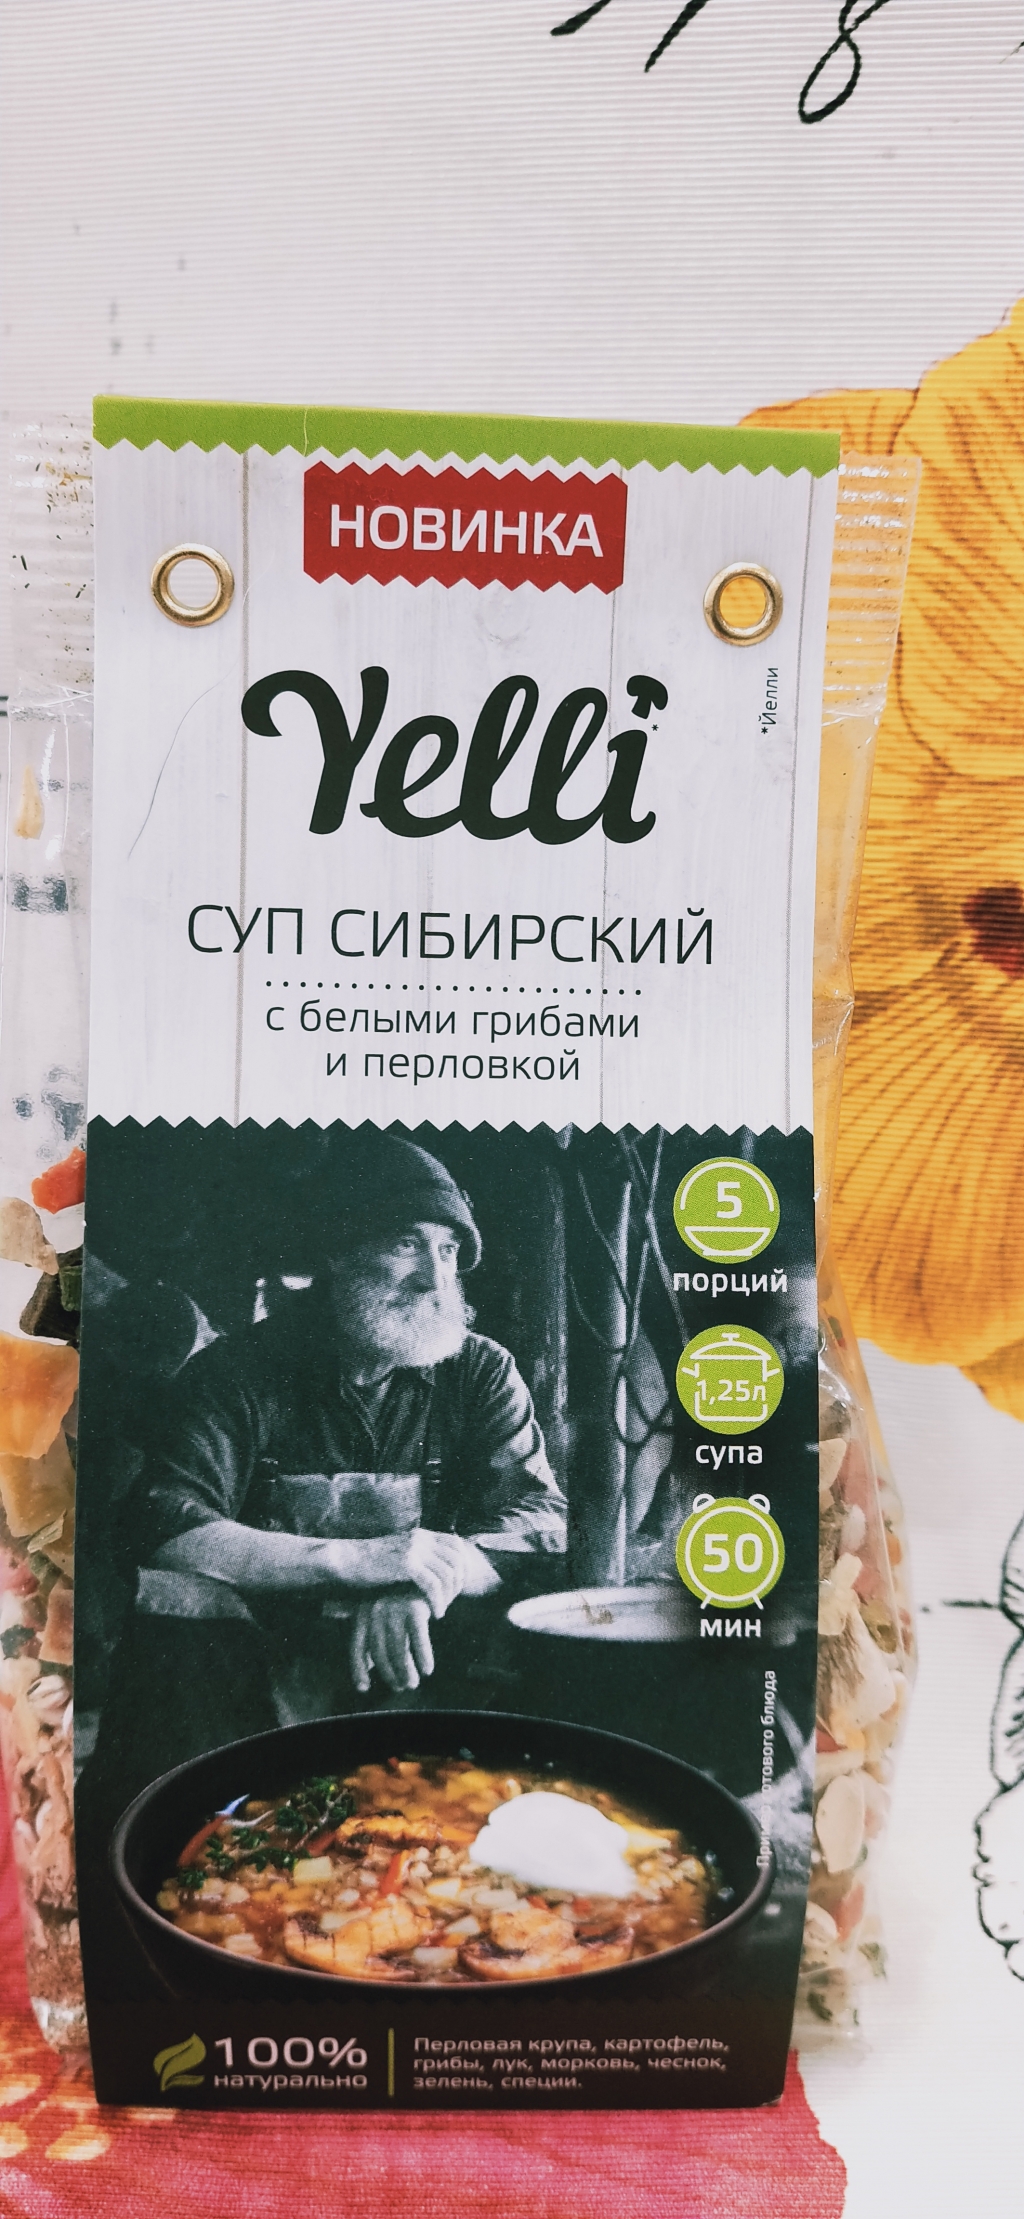 Суп Сибирский с белыми грибами и перловкой Yelli - Благодаря Yelli супы готовим чаще